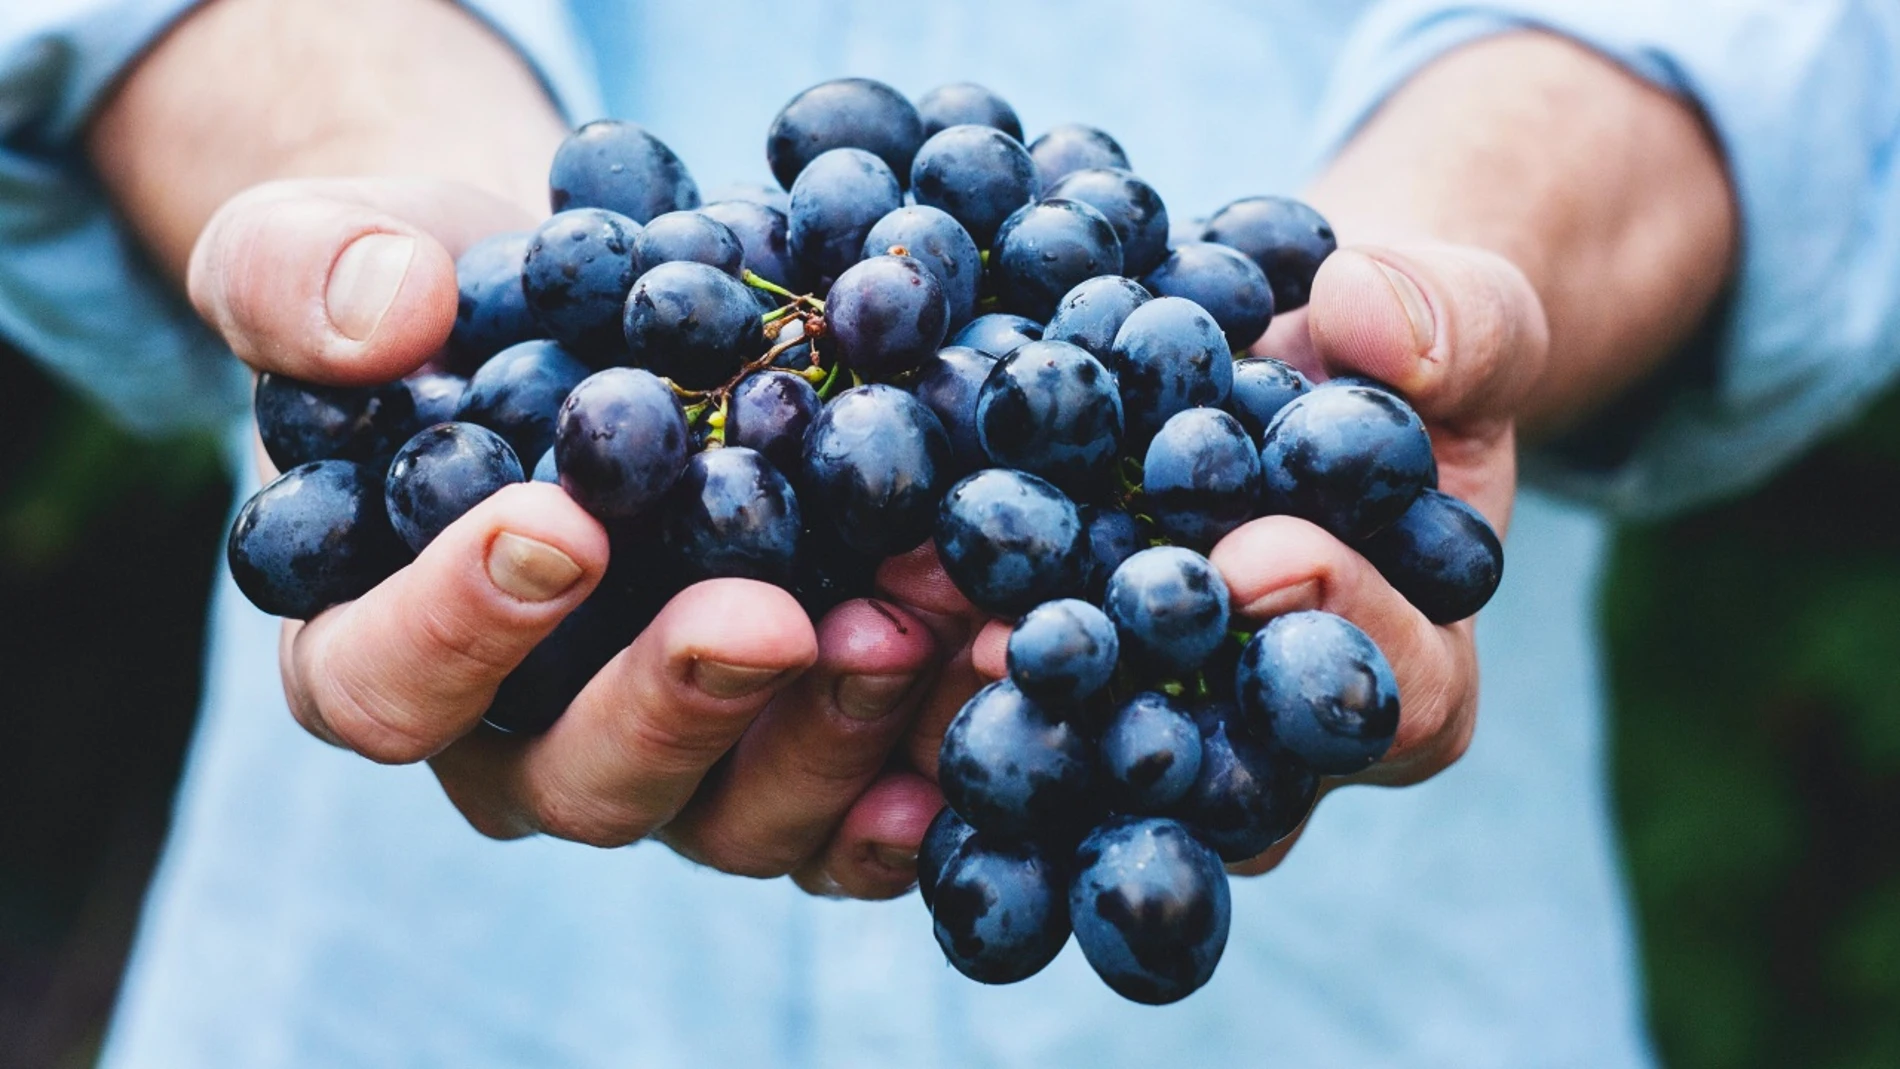 Uvas, un alimento que aporta mucha energía: Beneficios y propiedades nutricionales